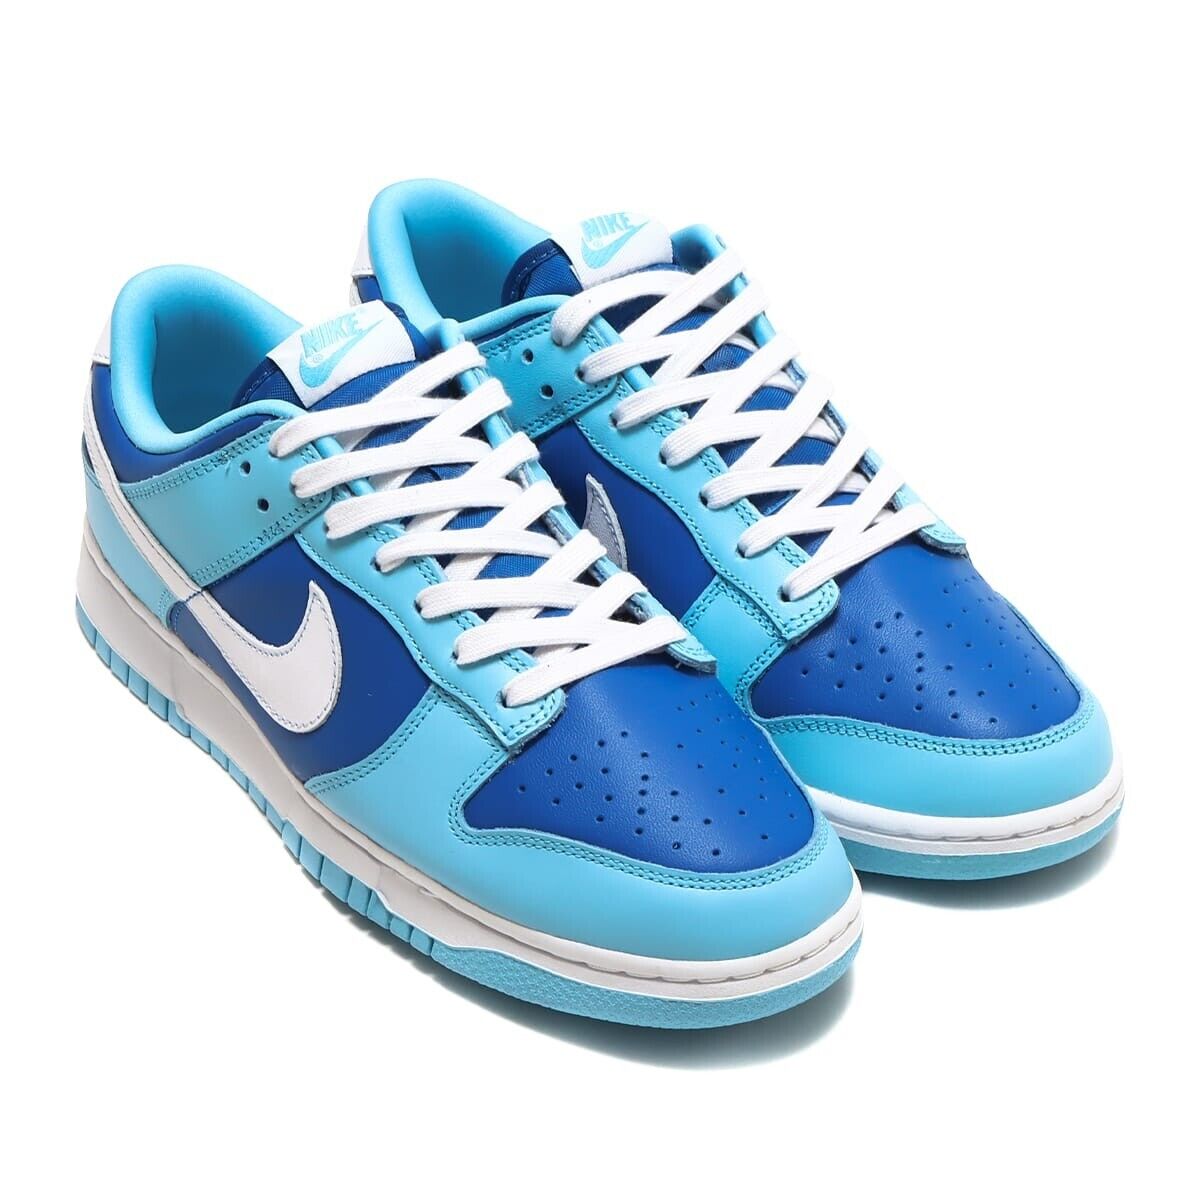 Argon Blue sneakers